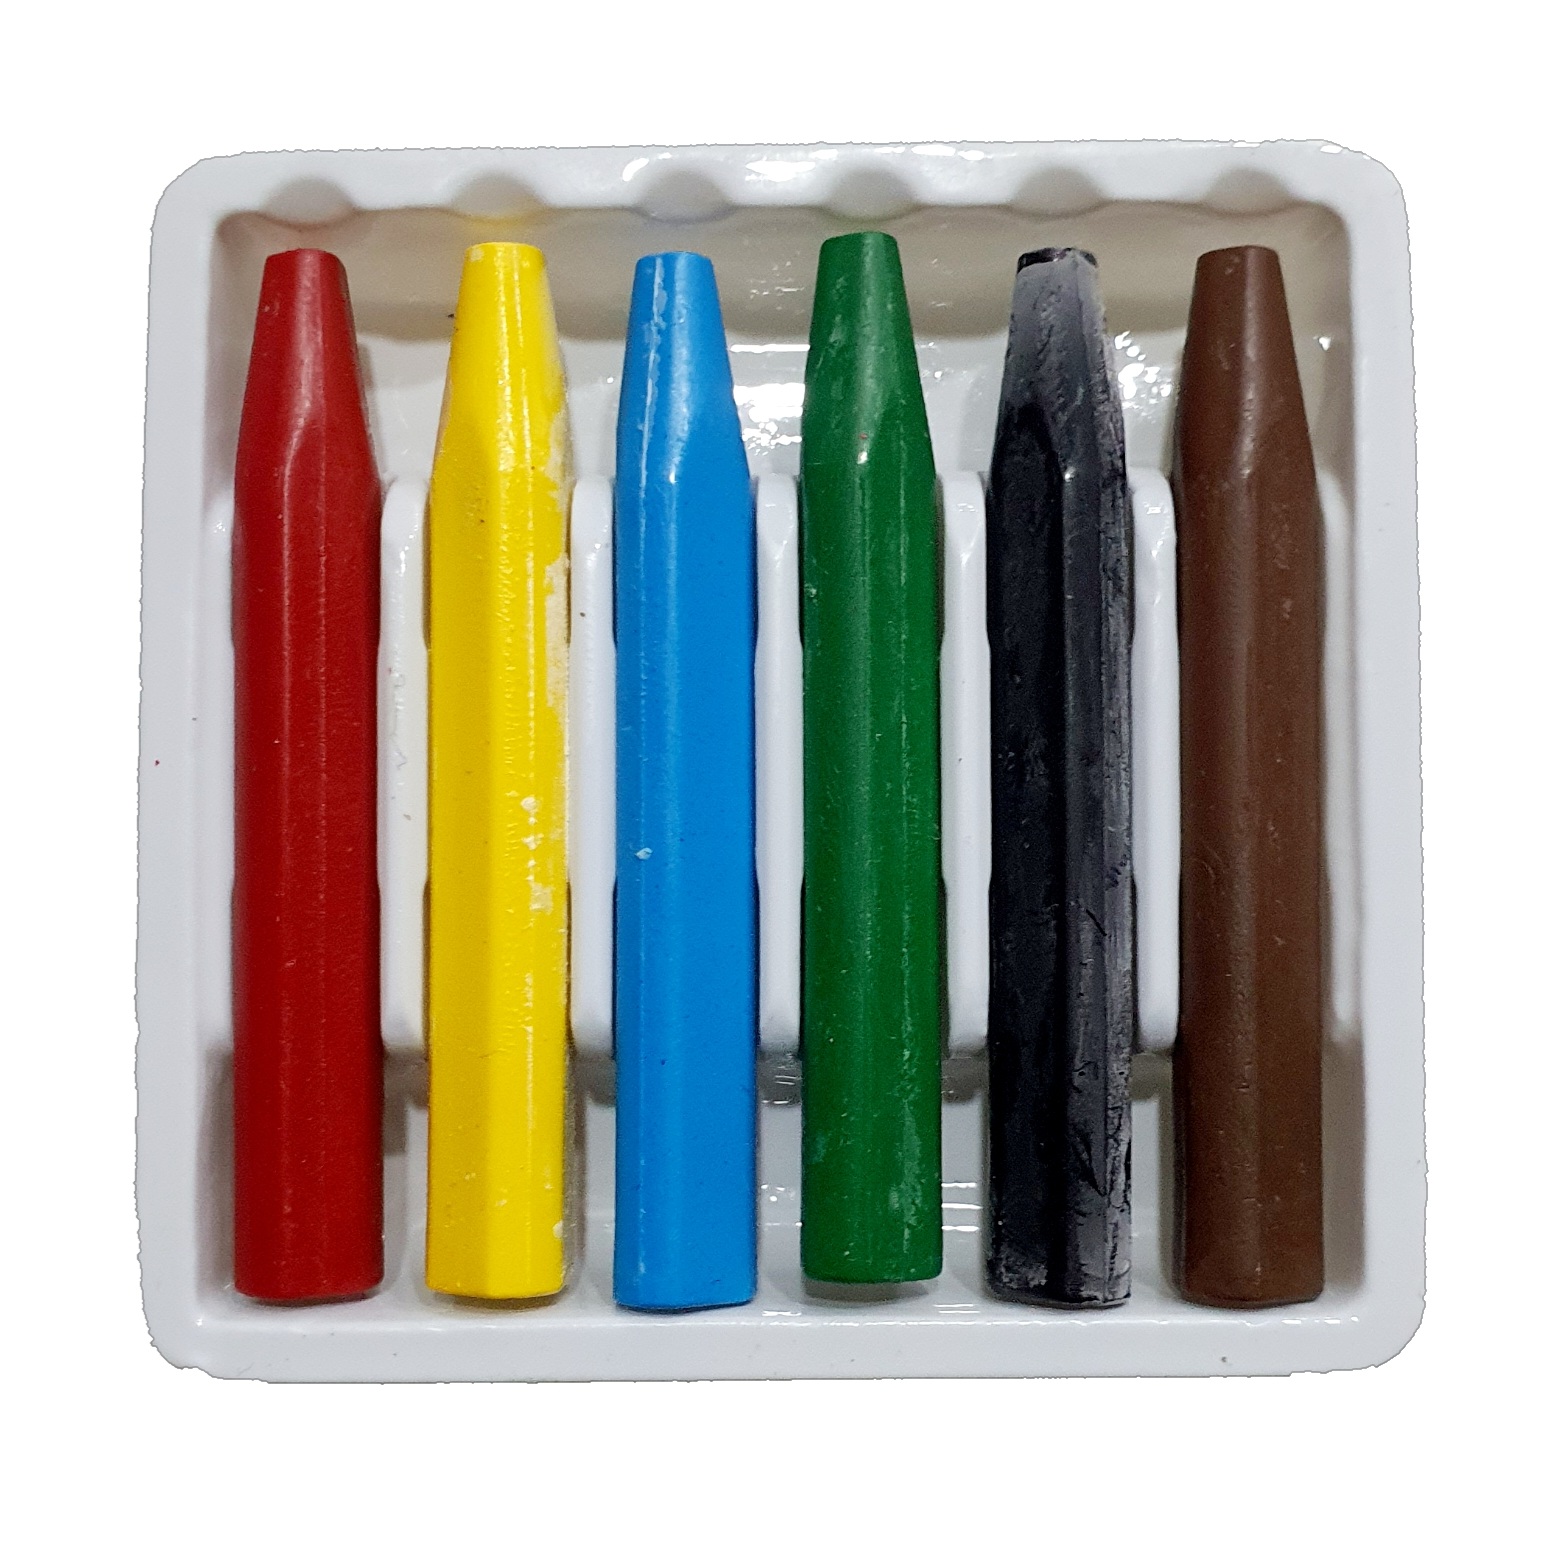 Set de 6 Crayones Plásticos, Colores Básicos - CY0048 - SABONIS